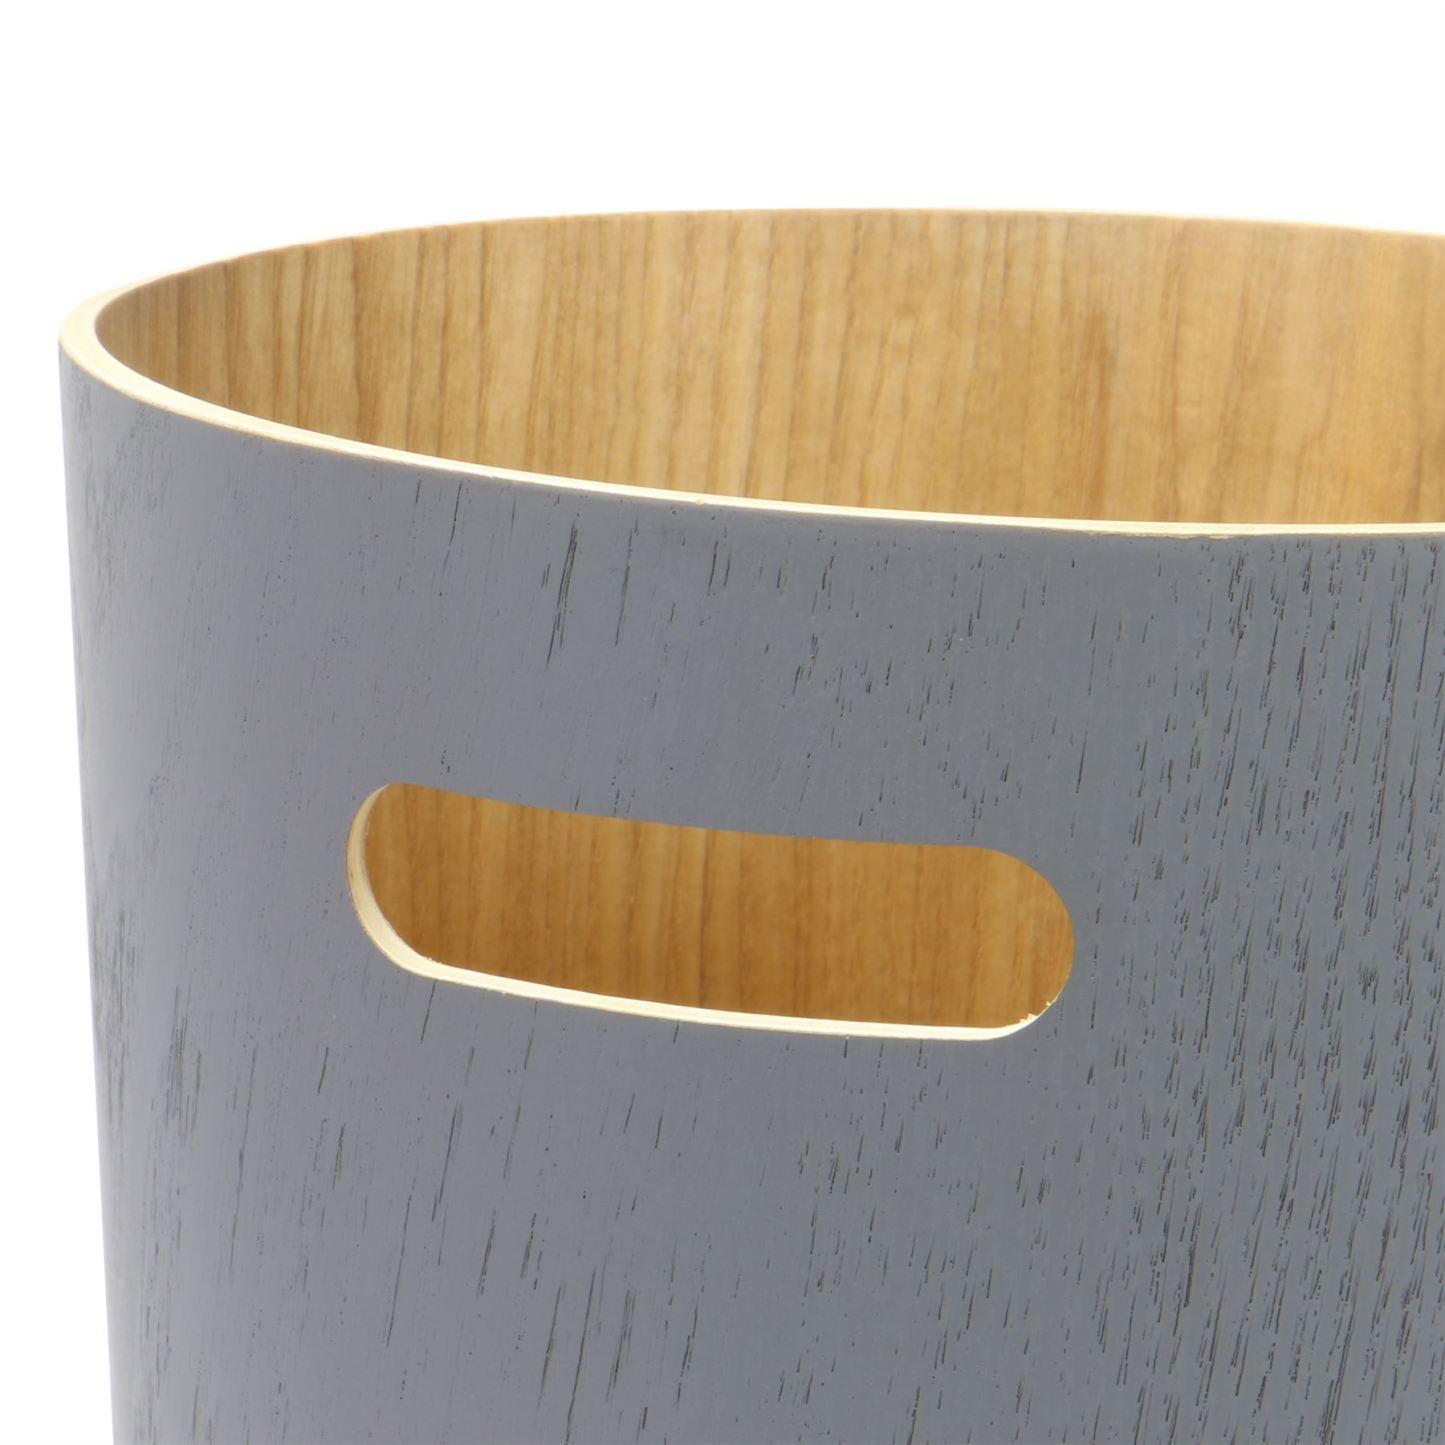 Wooden Waste Paper Bin Grey | M&W